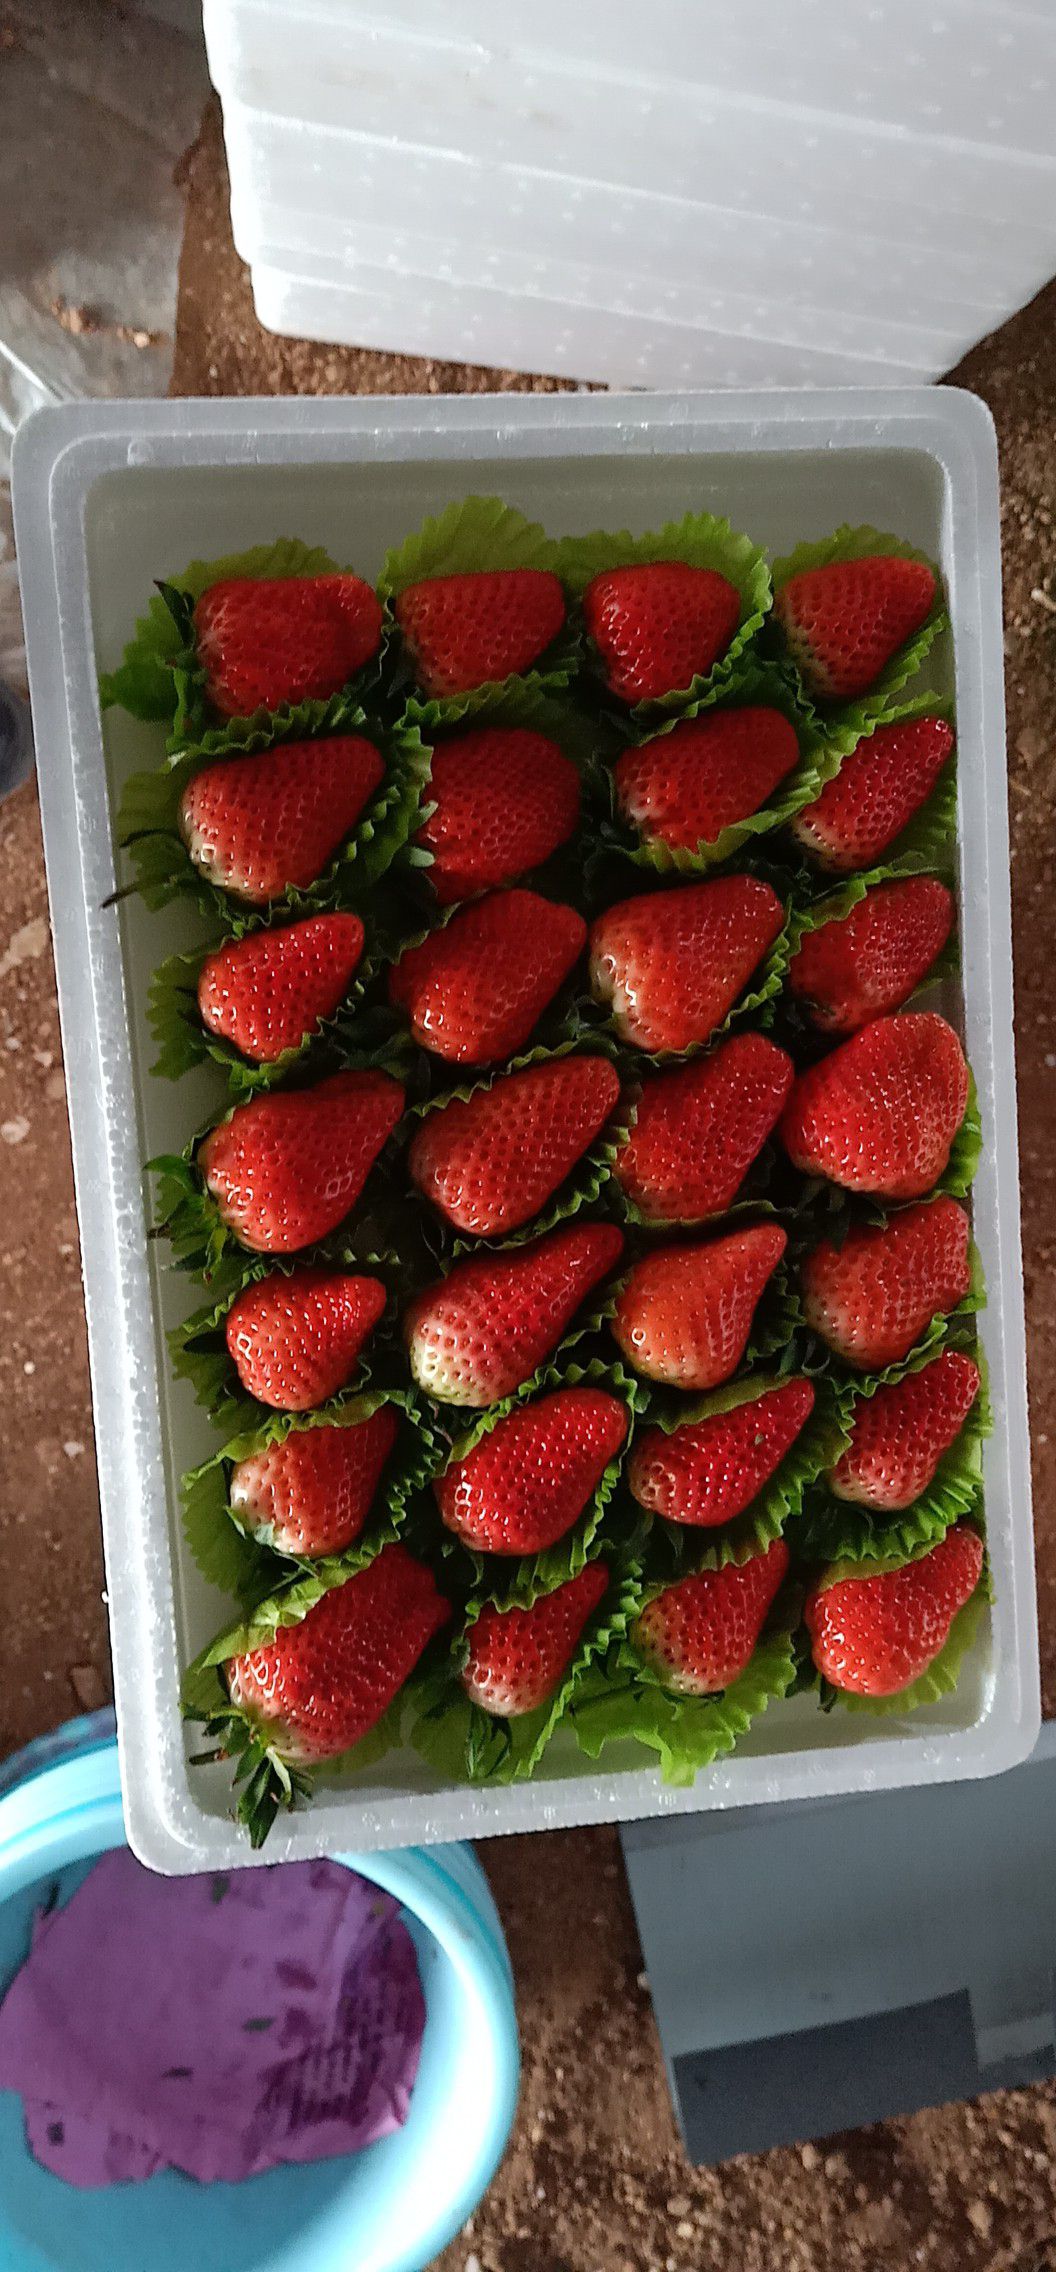 平度市甜宝草莓 一级果